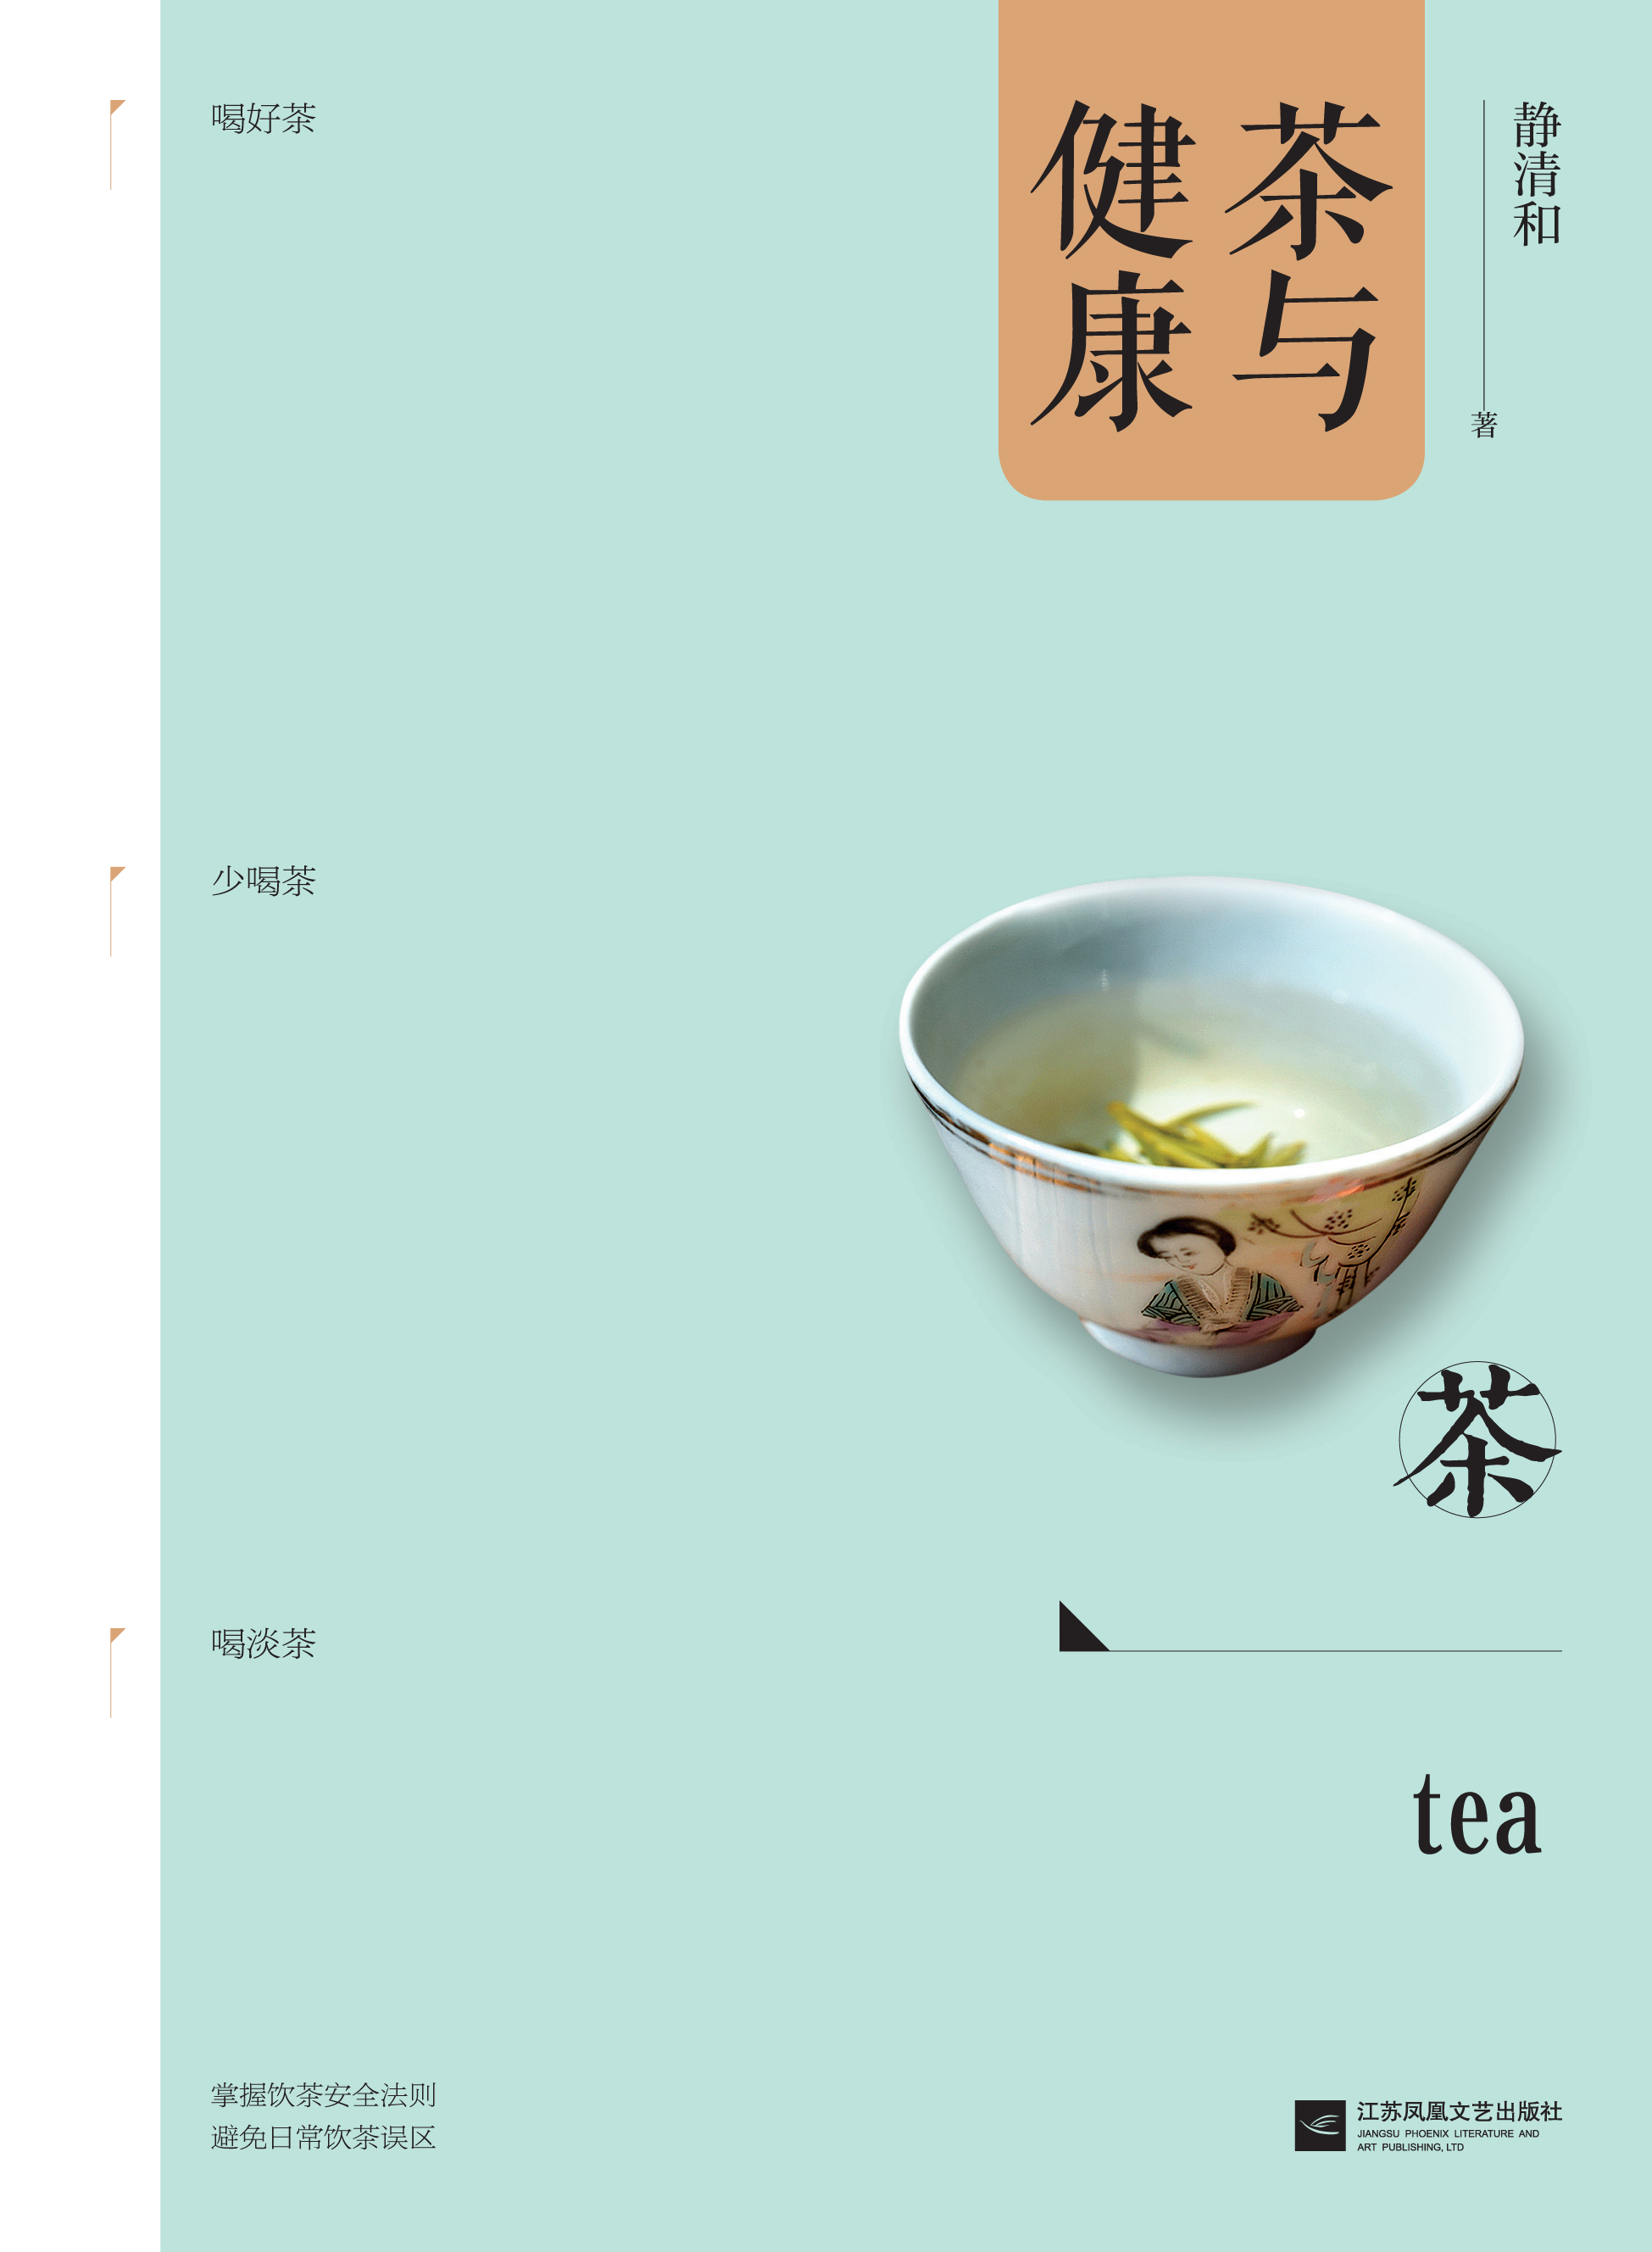 茶與健康(江蘇鳳凰文藝出版社出版書籍《茶與健康》)